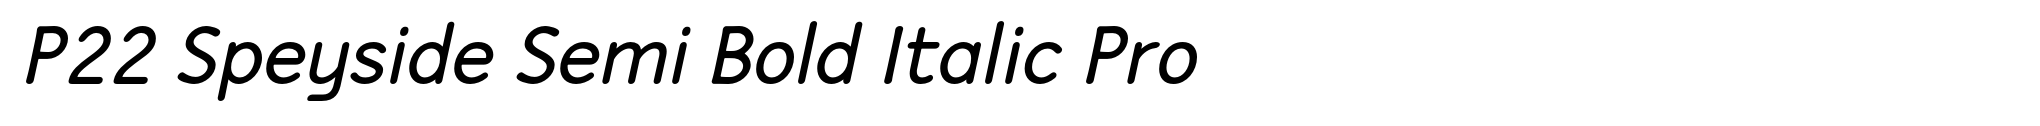 P22 Speyside Semi Bold Italic Pro image